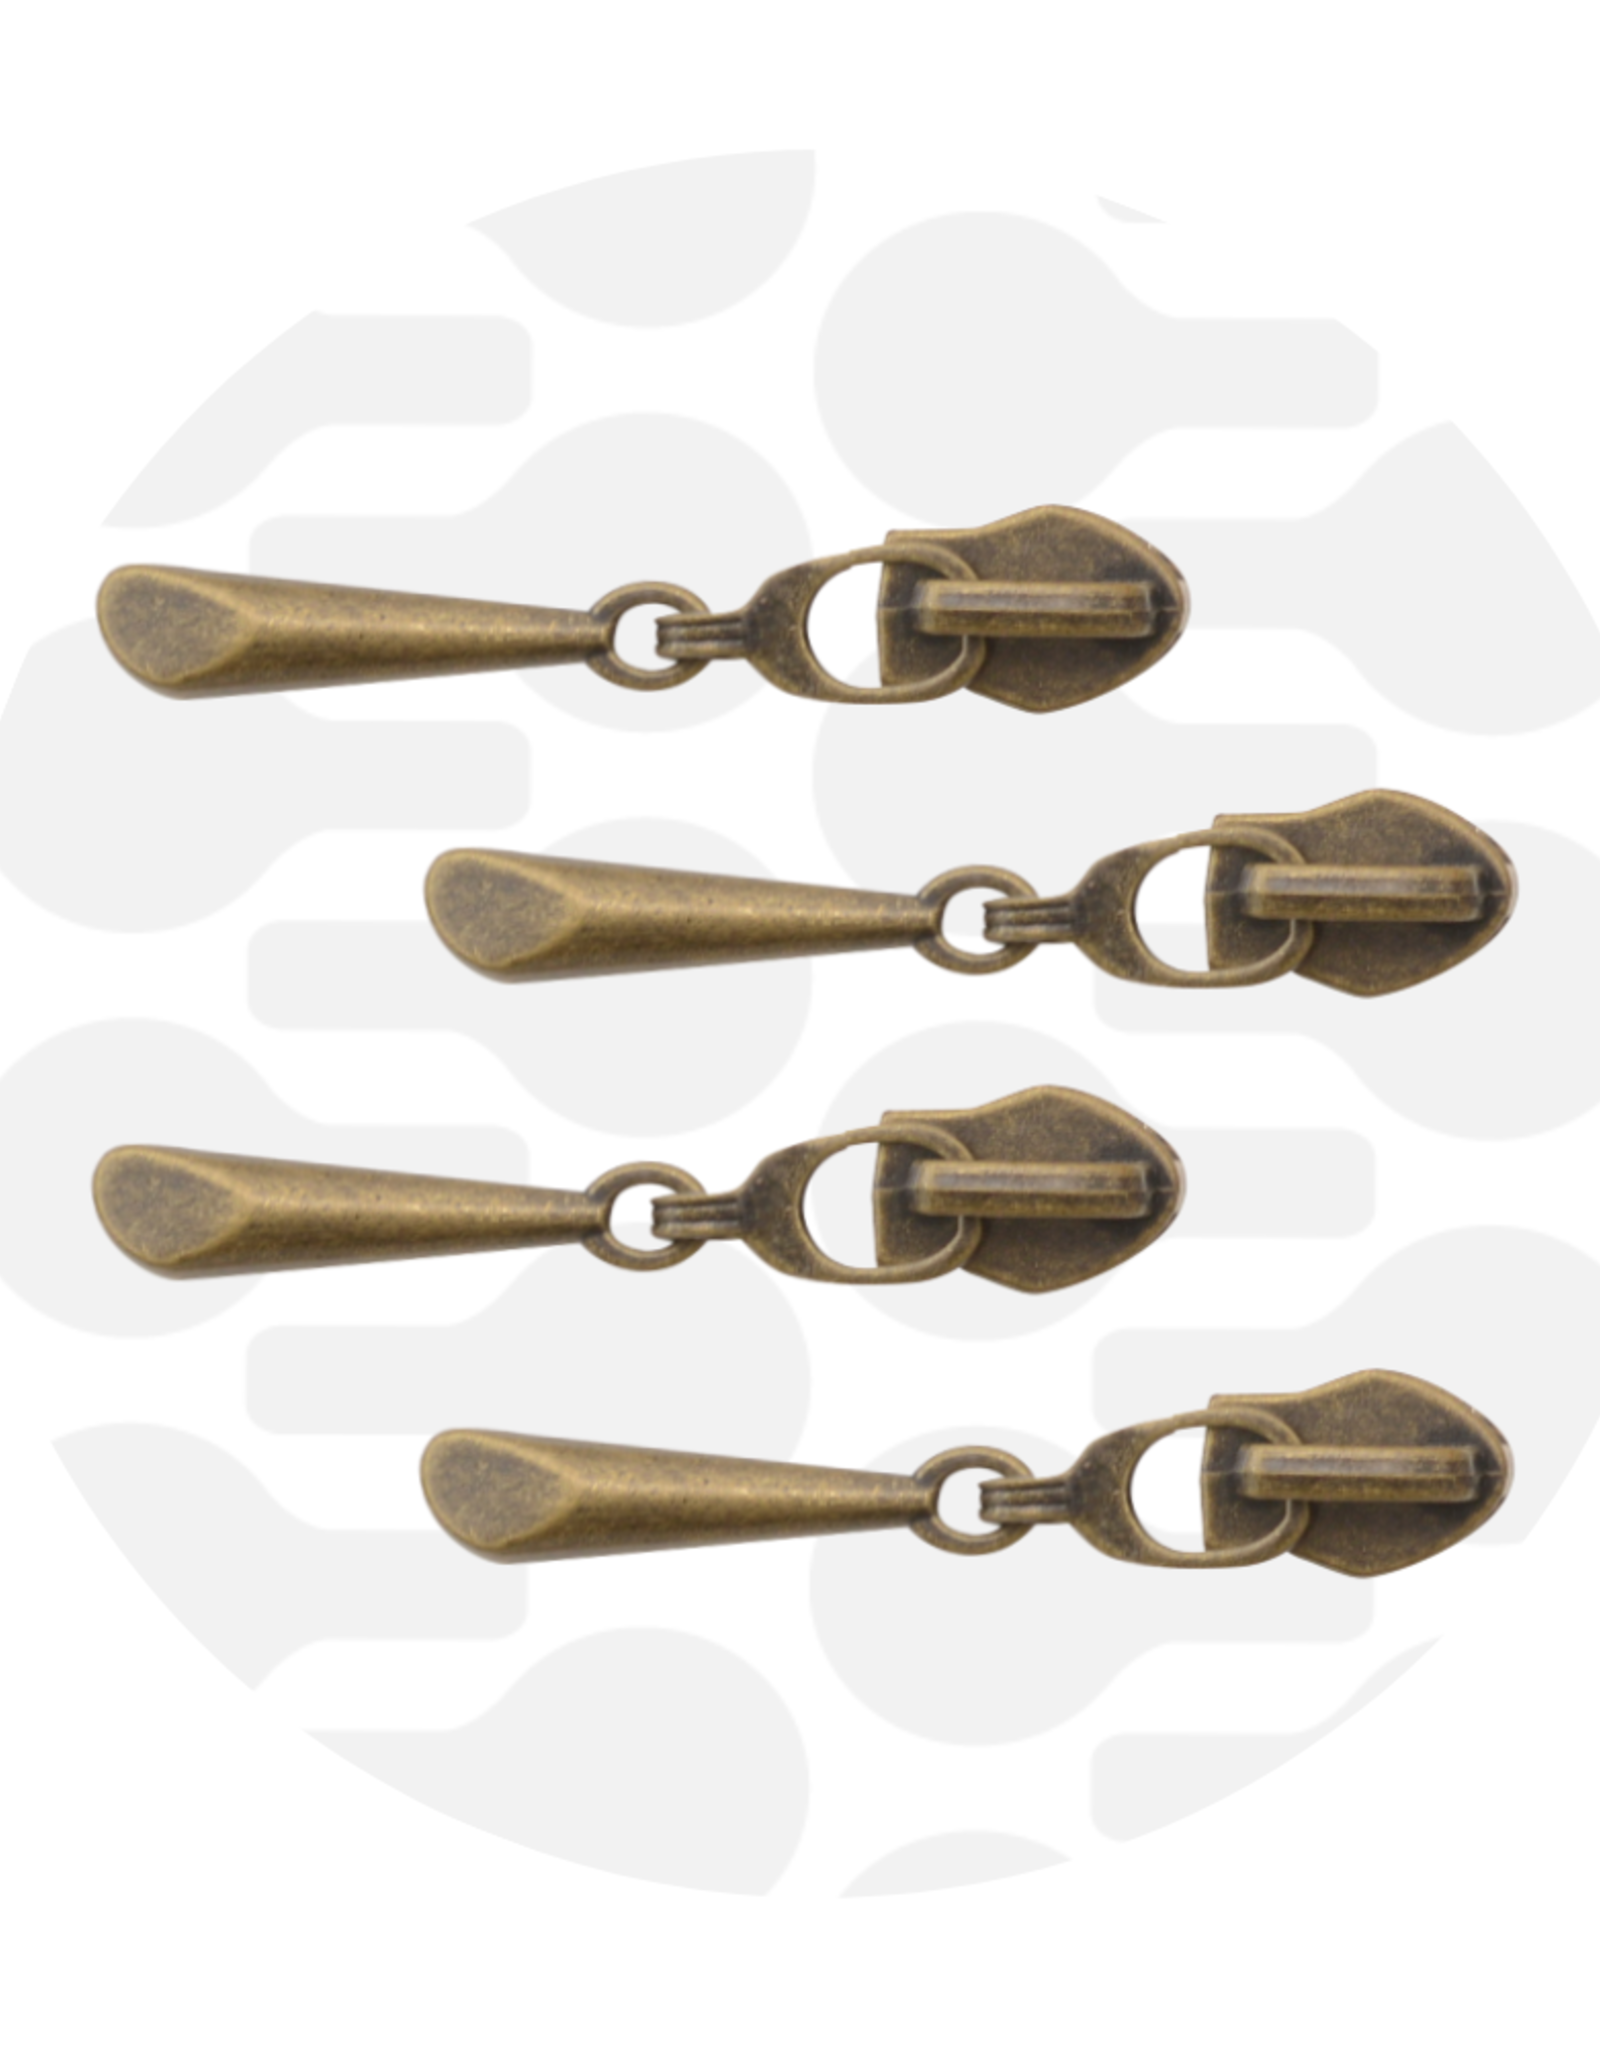 Zipperzoo Schuiver spiraalrits #5 druppel antiek goud- set van 4 stuks